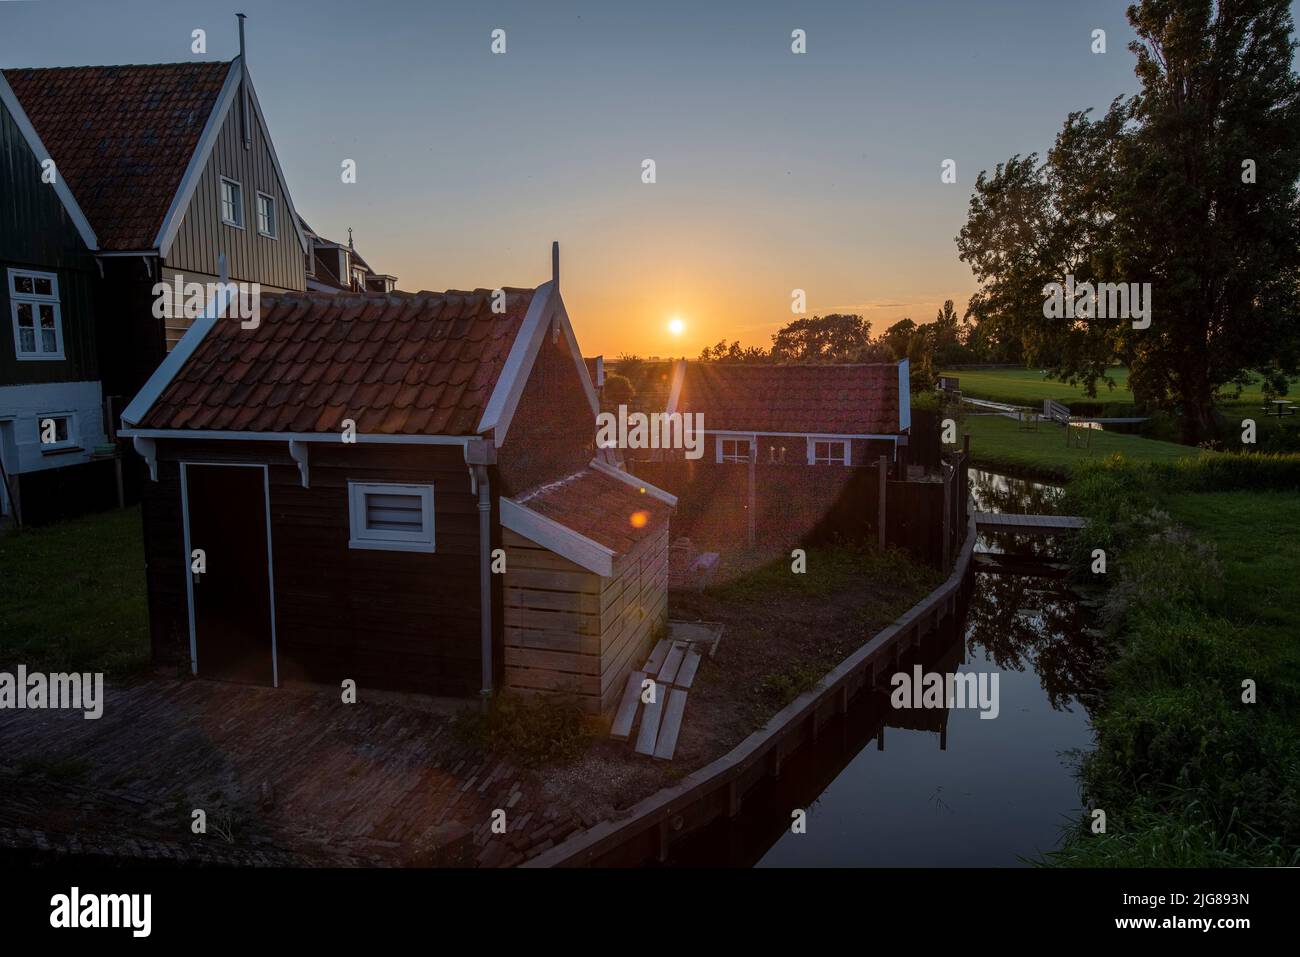 Charakteristische Häuser, Sonnenuntergang, Insel Marken, Noord-Holland, Niederlande Stockfoto